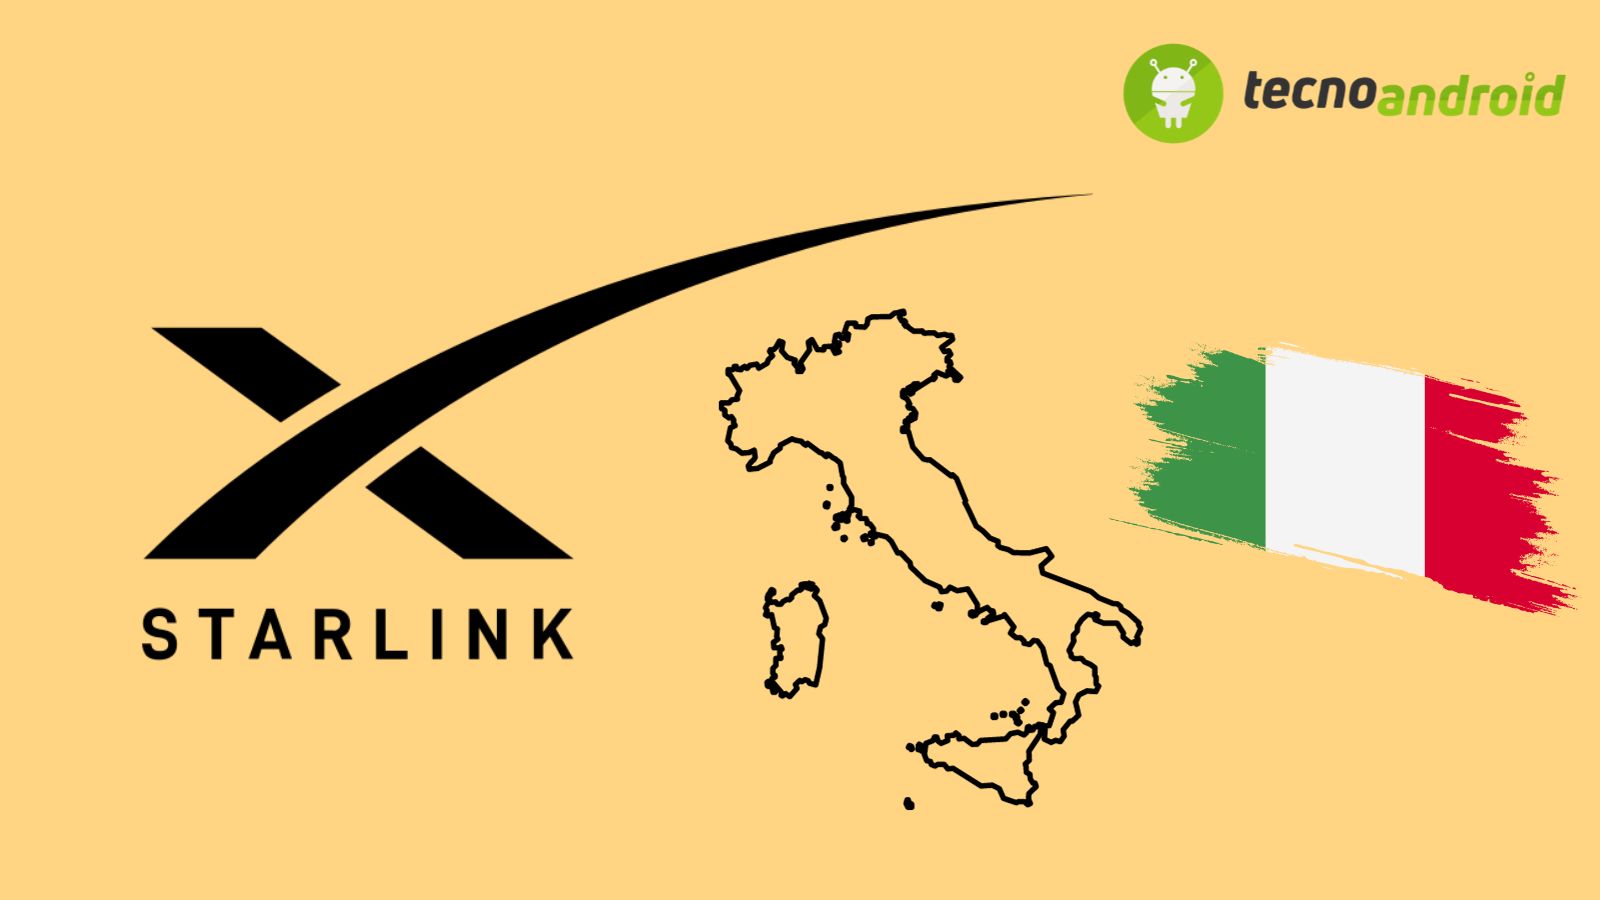 Starlink arriva in Italia? Ci sono degli ostacoli